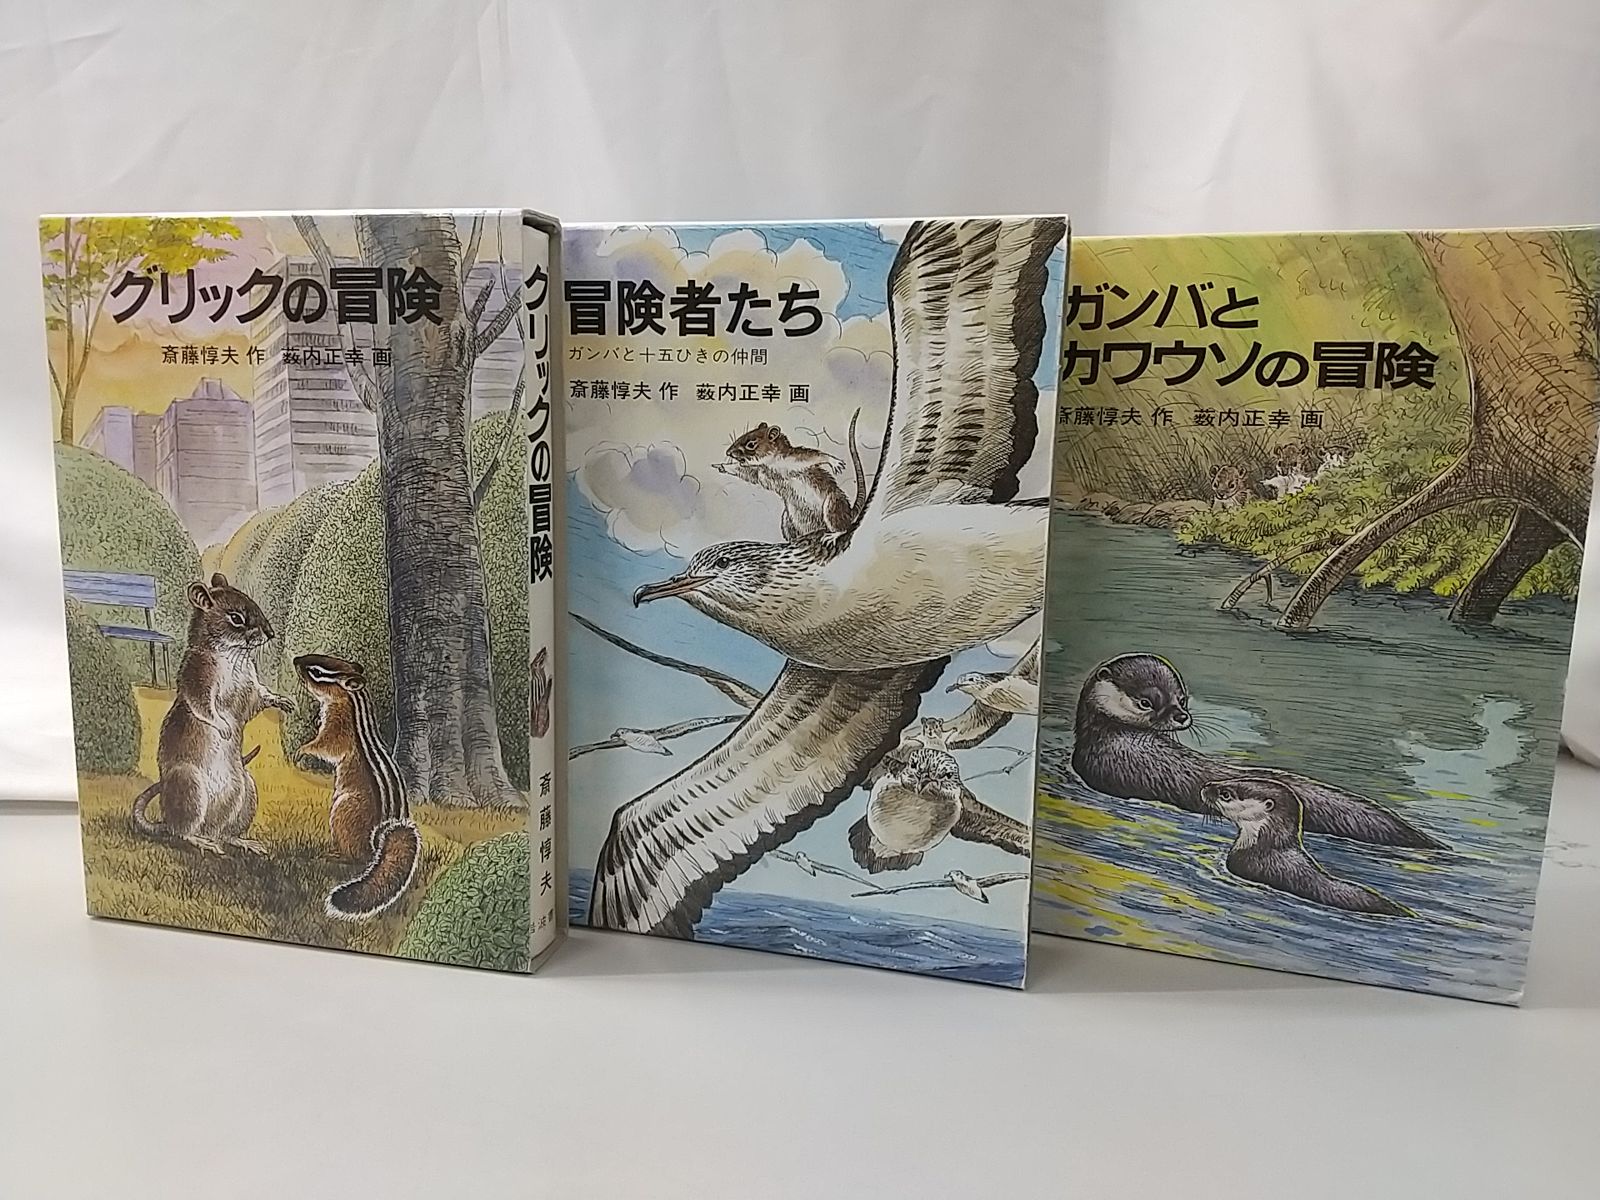 斎藤惇夫 児童文学3冊セット 岩波書店 冒険者たち ガンバと15ひきの